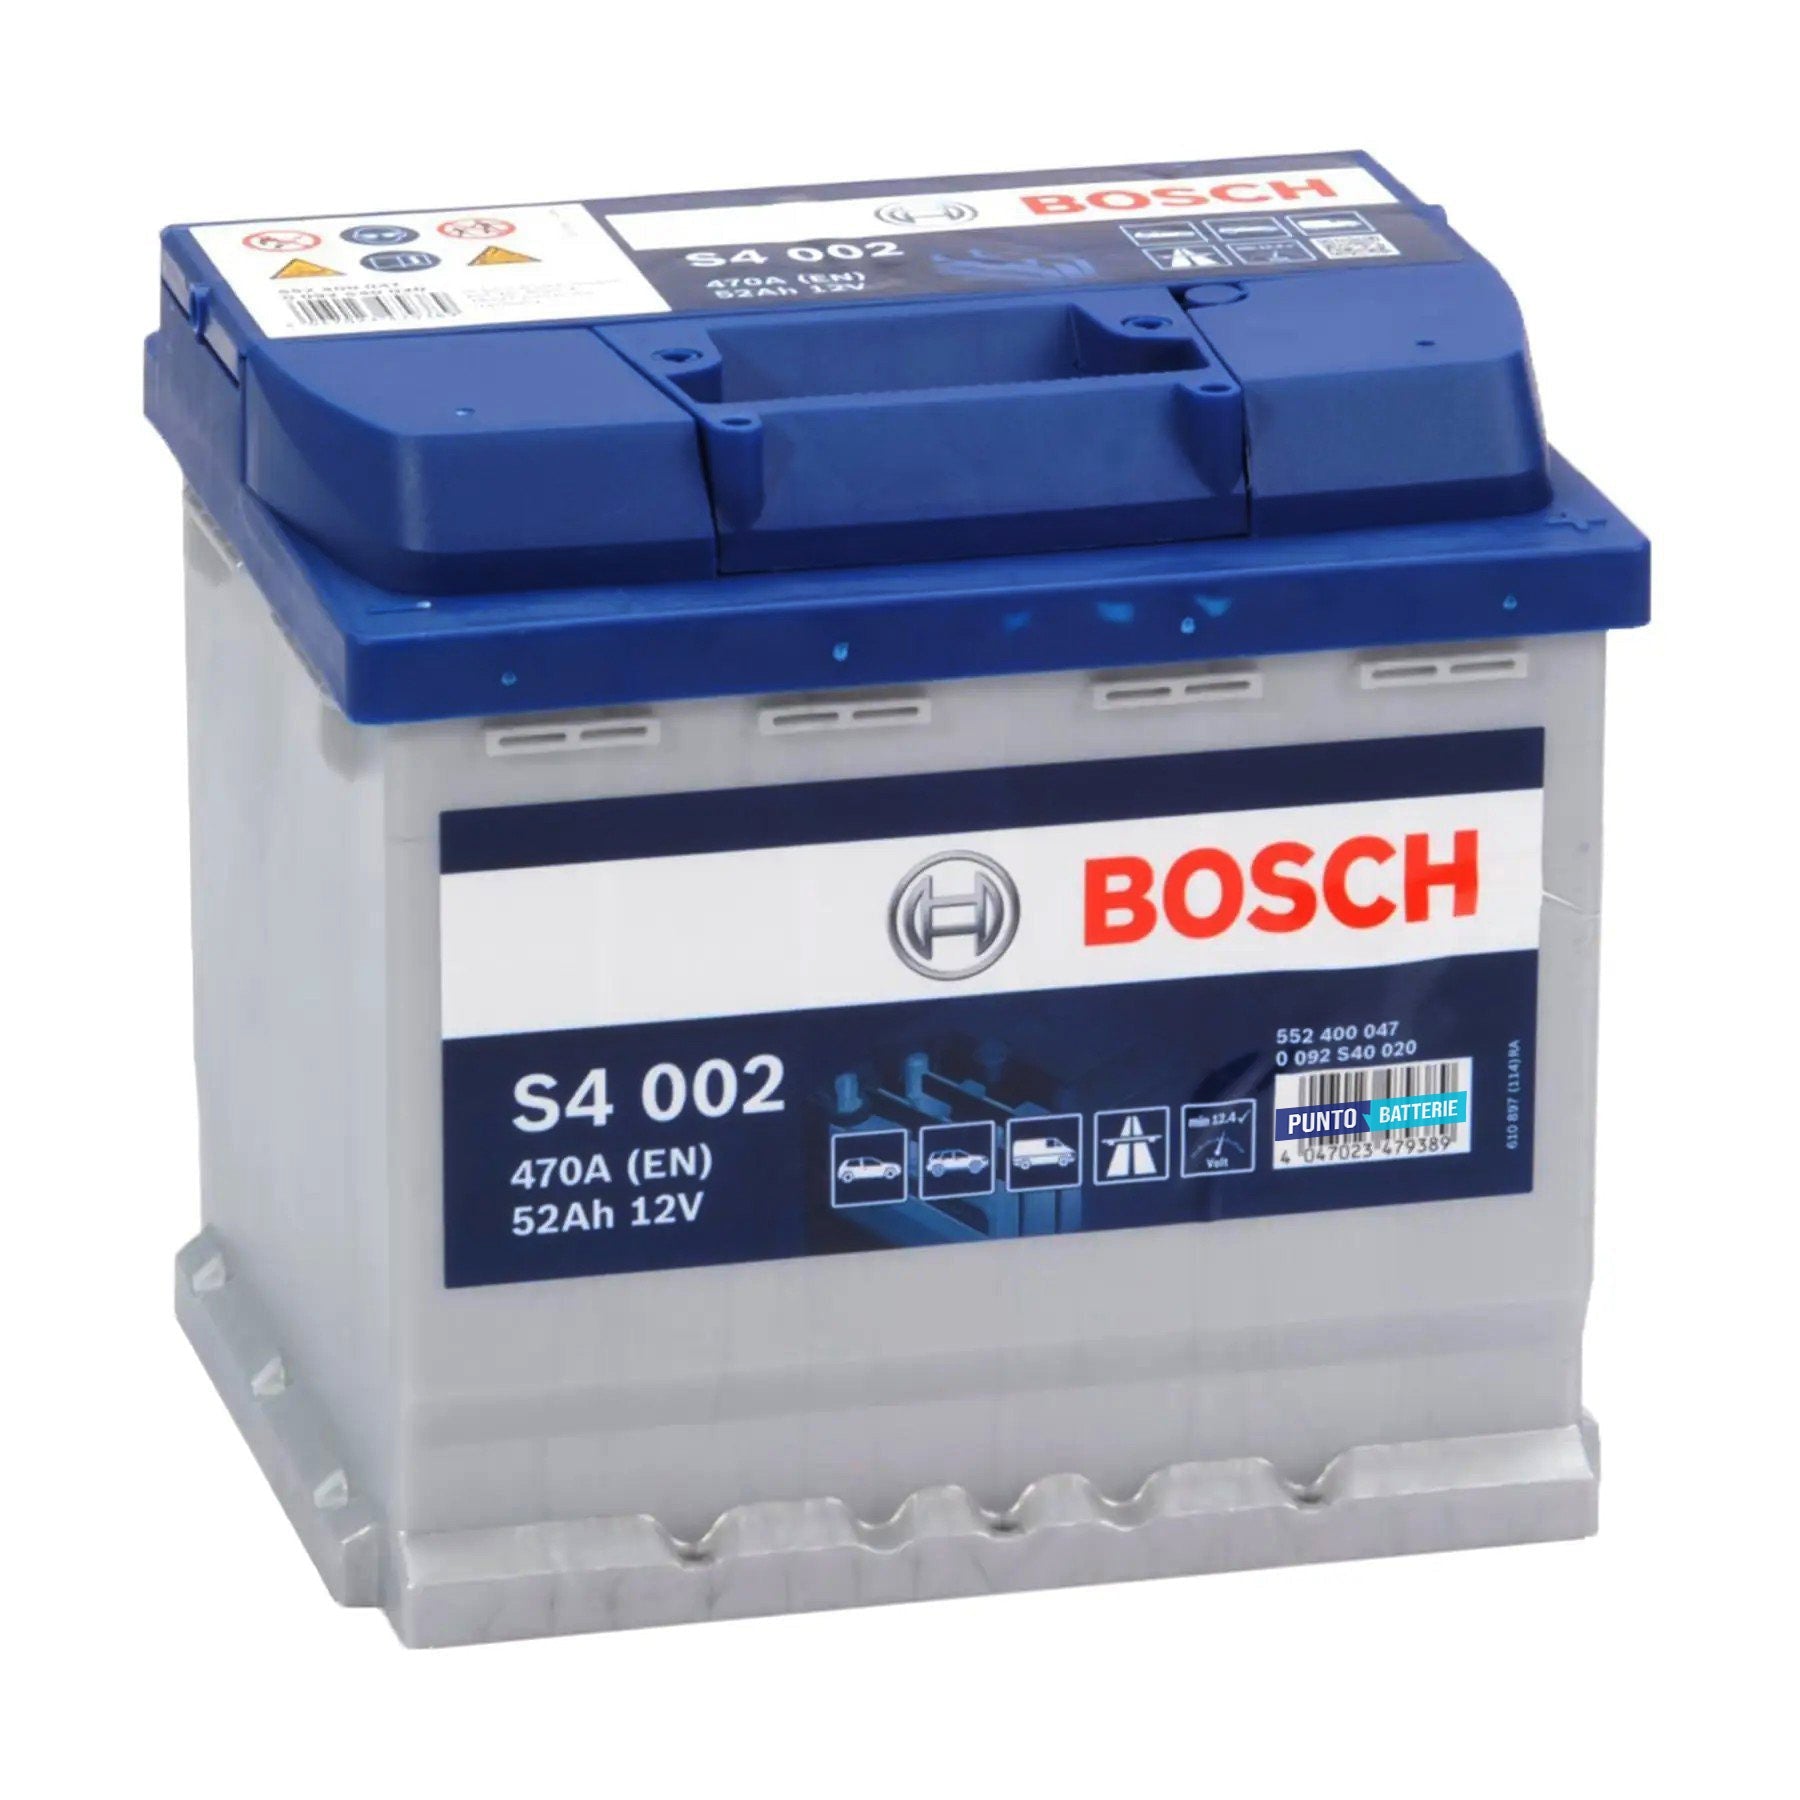 Batteria originale Bosch S4 S4 002, dimensioni 207 x 175 x 190, polo positivo a destra, 12 volt, 52 amperora, 470 ampere. Batteria per auto e veicoli leggeri.